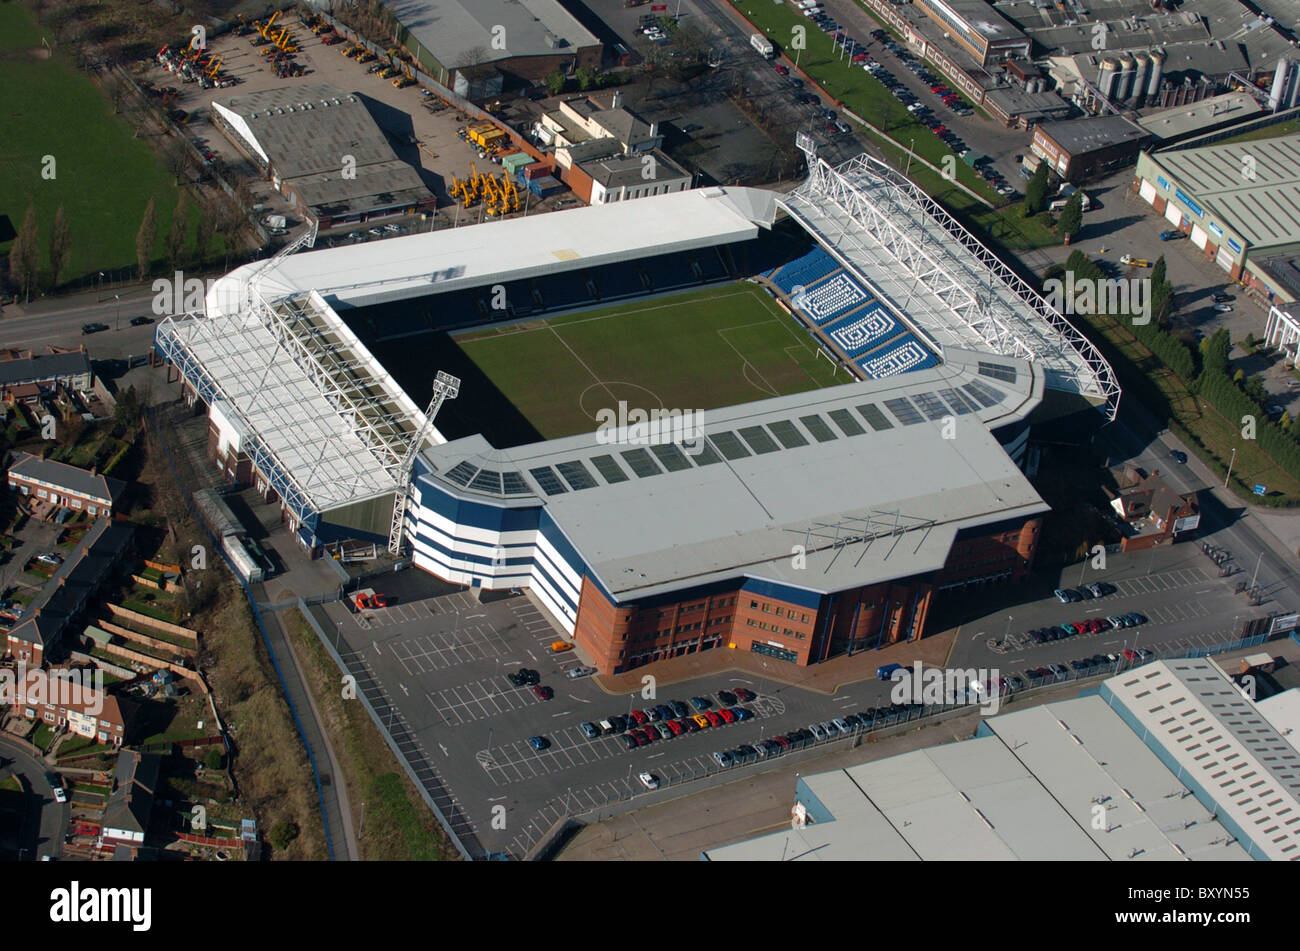 https://c8.alamy.com/comp/BXYN55/aerial-view-of-west-bromwich-albion-football-club-hawthorns-stadium-BXYN55.jpg